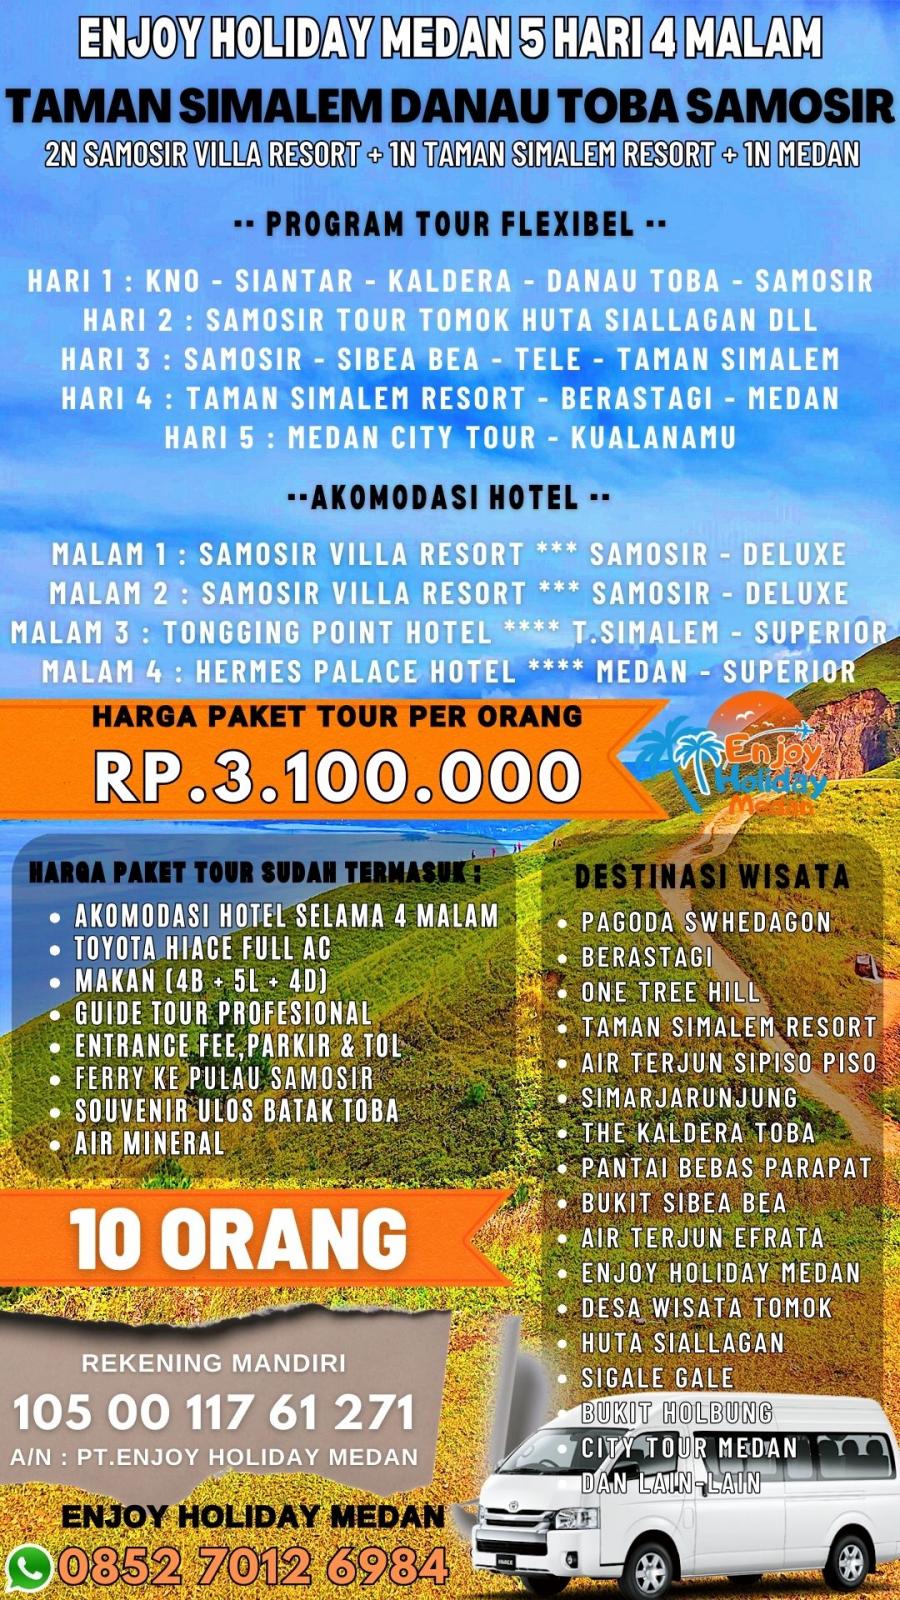 5H4N Medan - Berastagi - Sipiso Piso - Simarjarunjung + Tour Danau Toba 2019